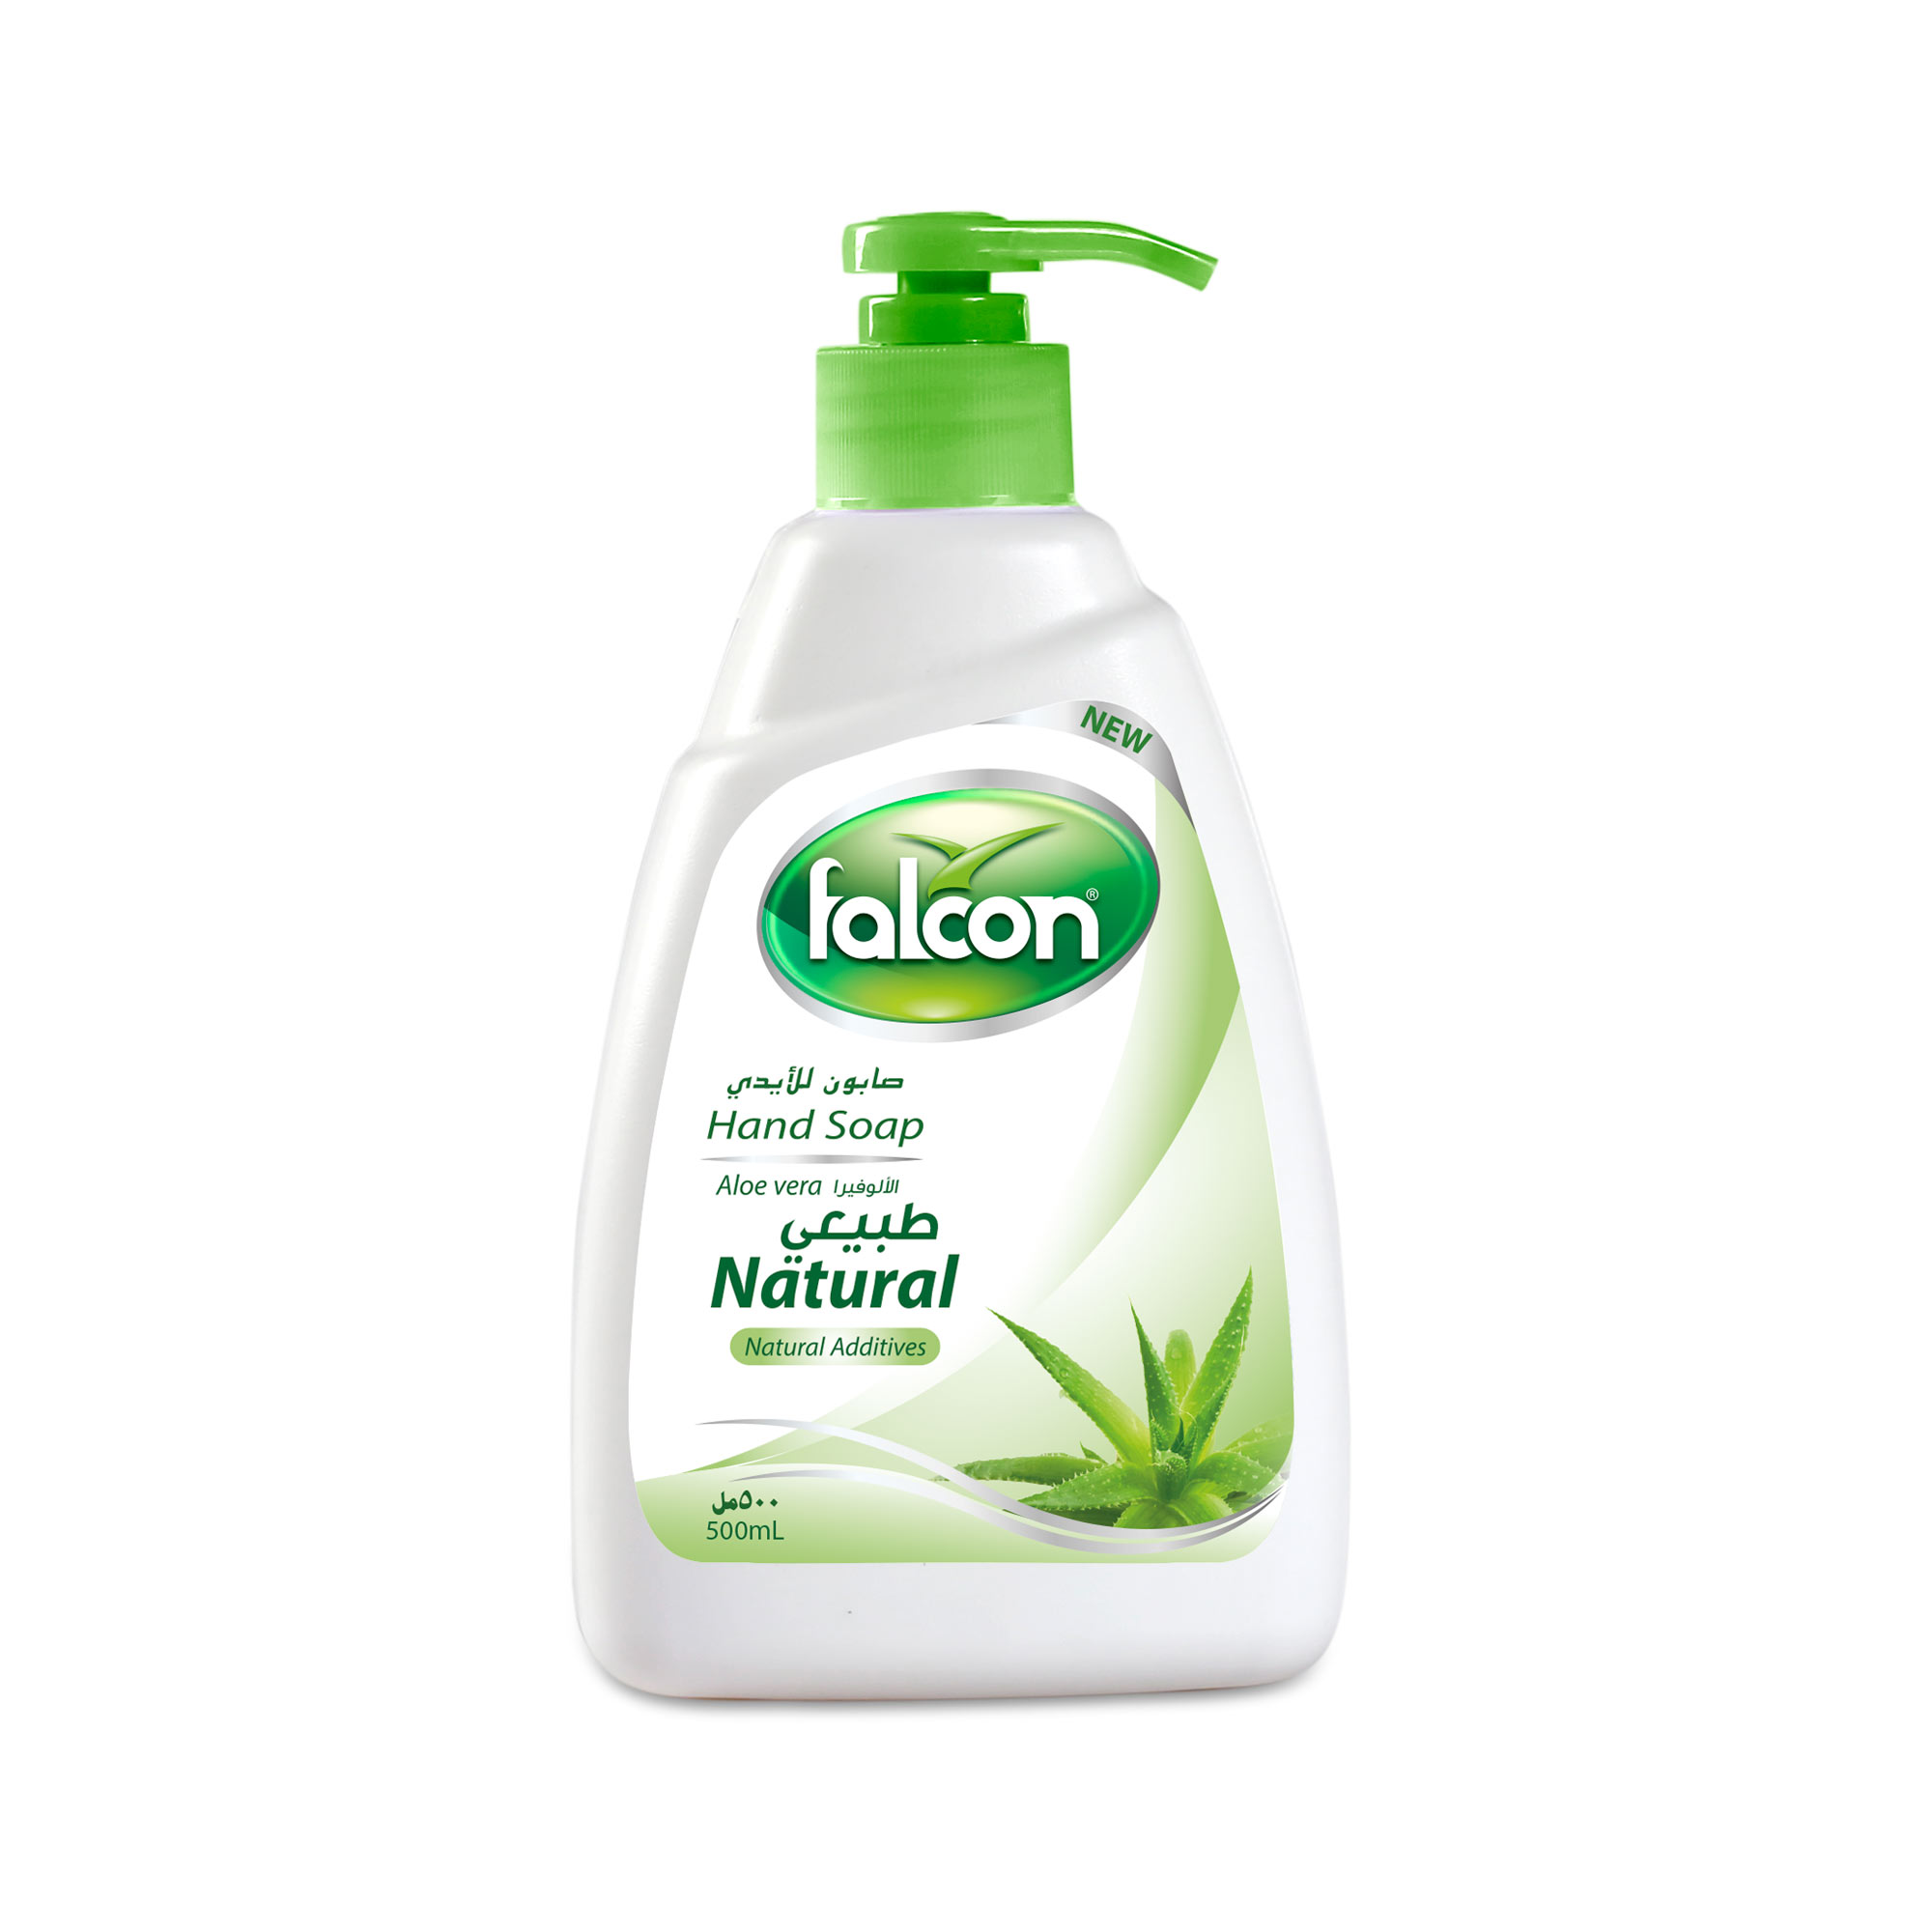 Falcon Natural hand Soap Liquid (Aloevera, 500 ml Bottle)